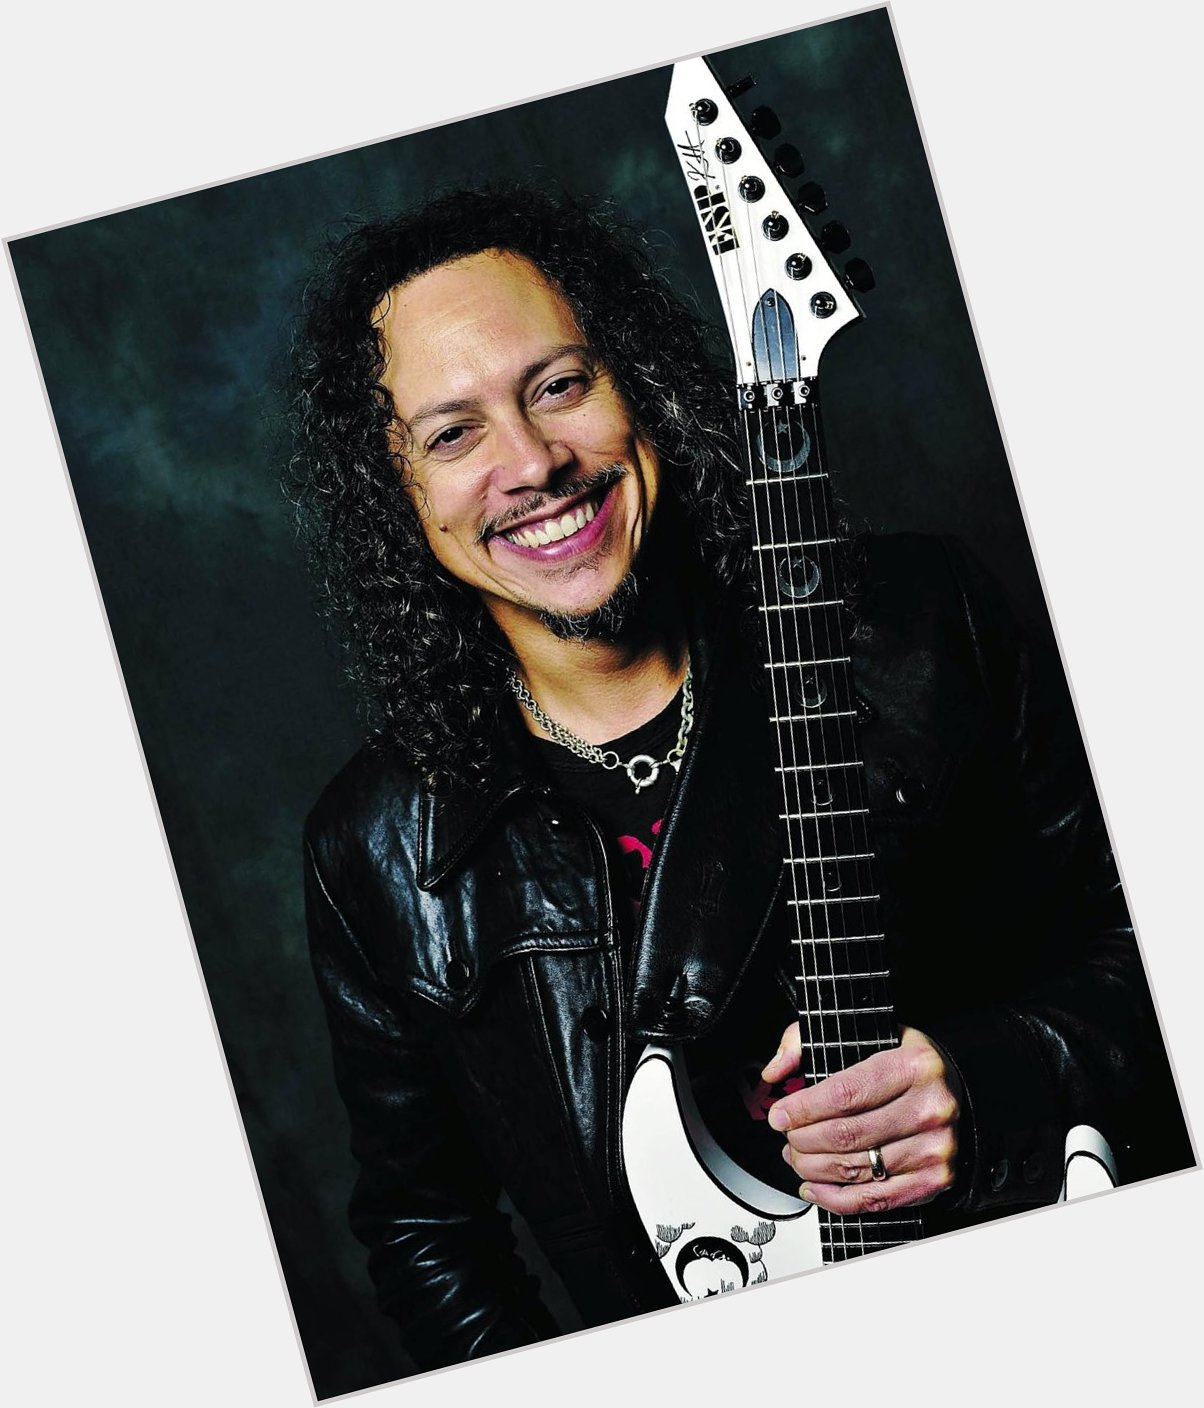  Happy birthday, Kirk Hammett.
October 18th, 2021  